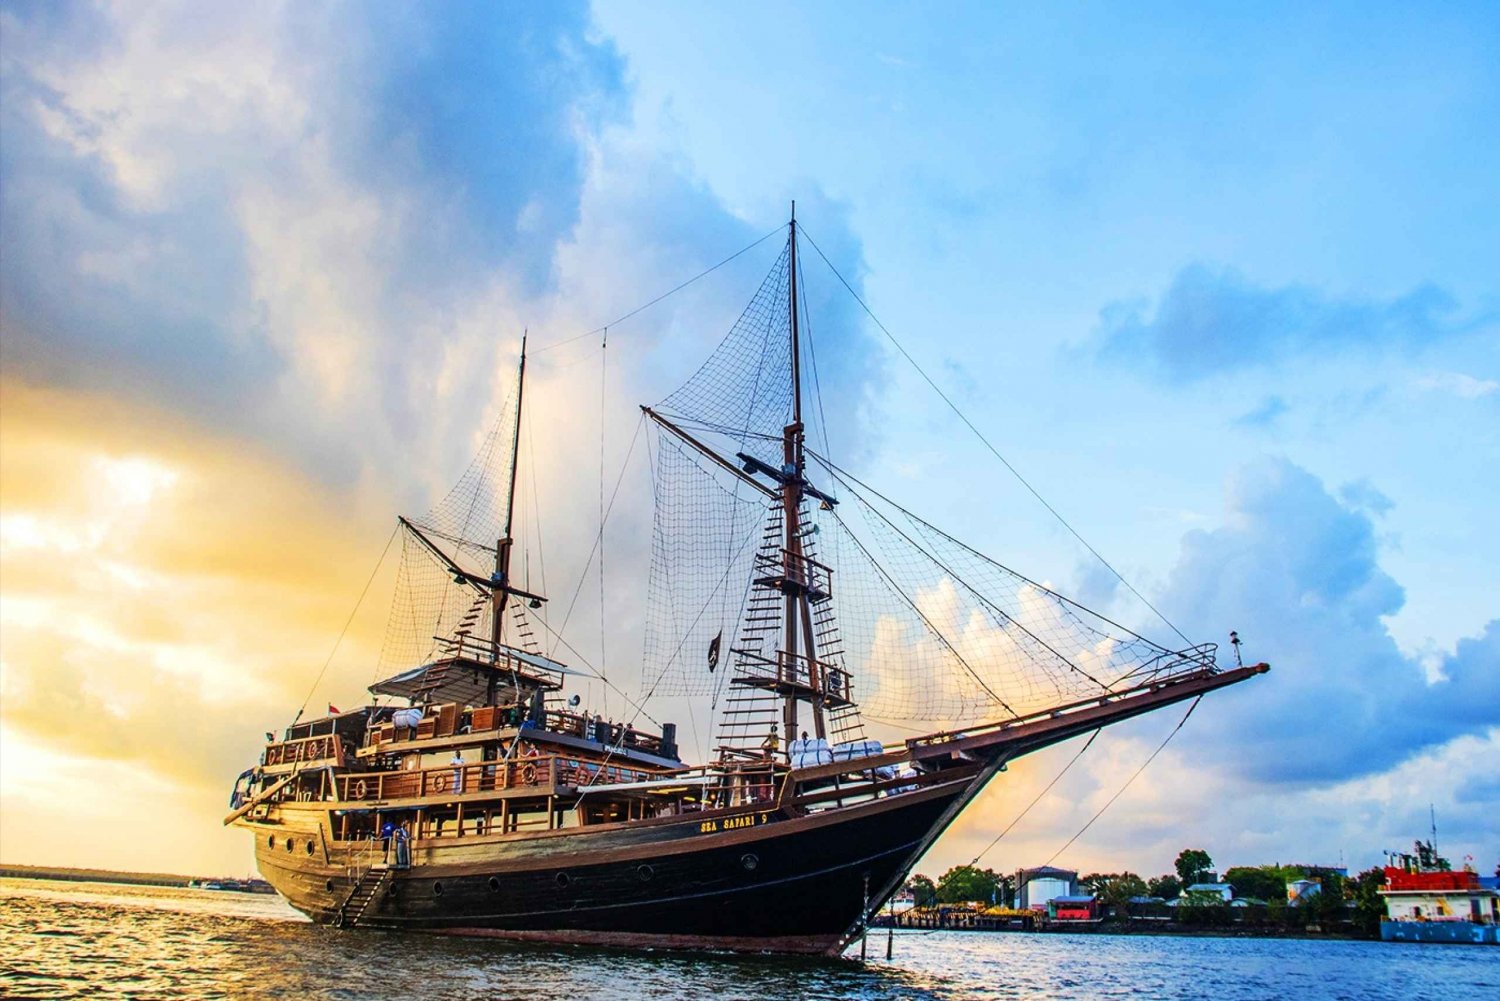 Bali: Cruzeiro com jantar pirata com shows, jogos e música